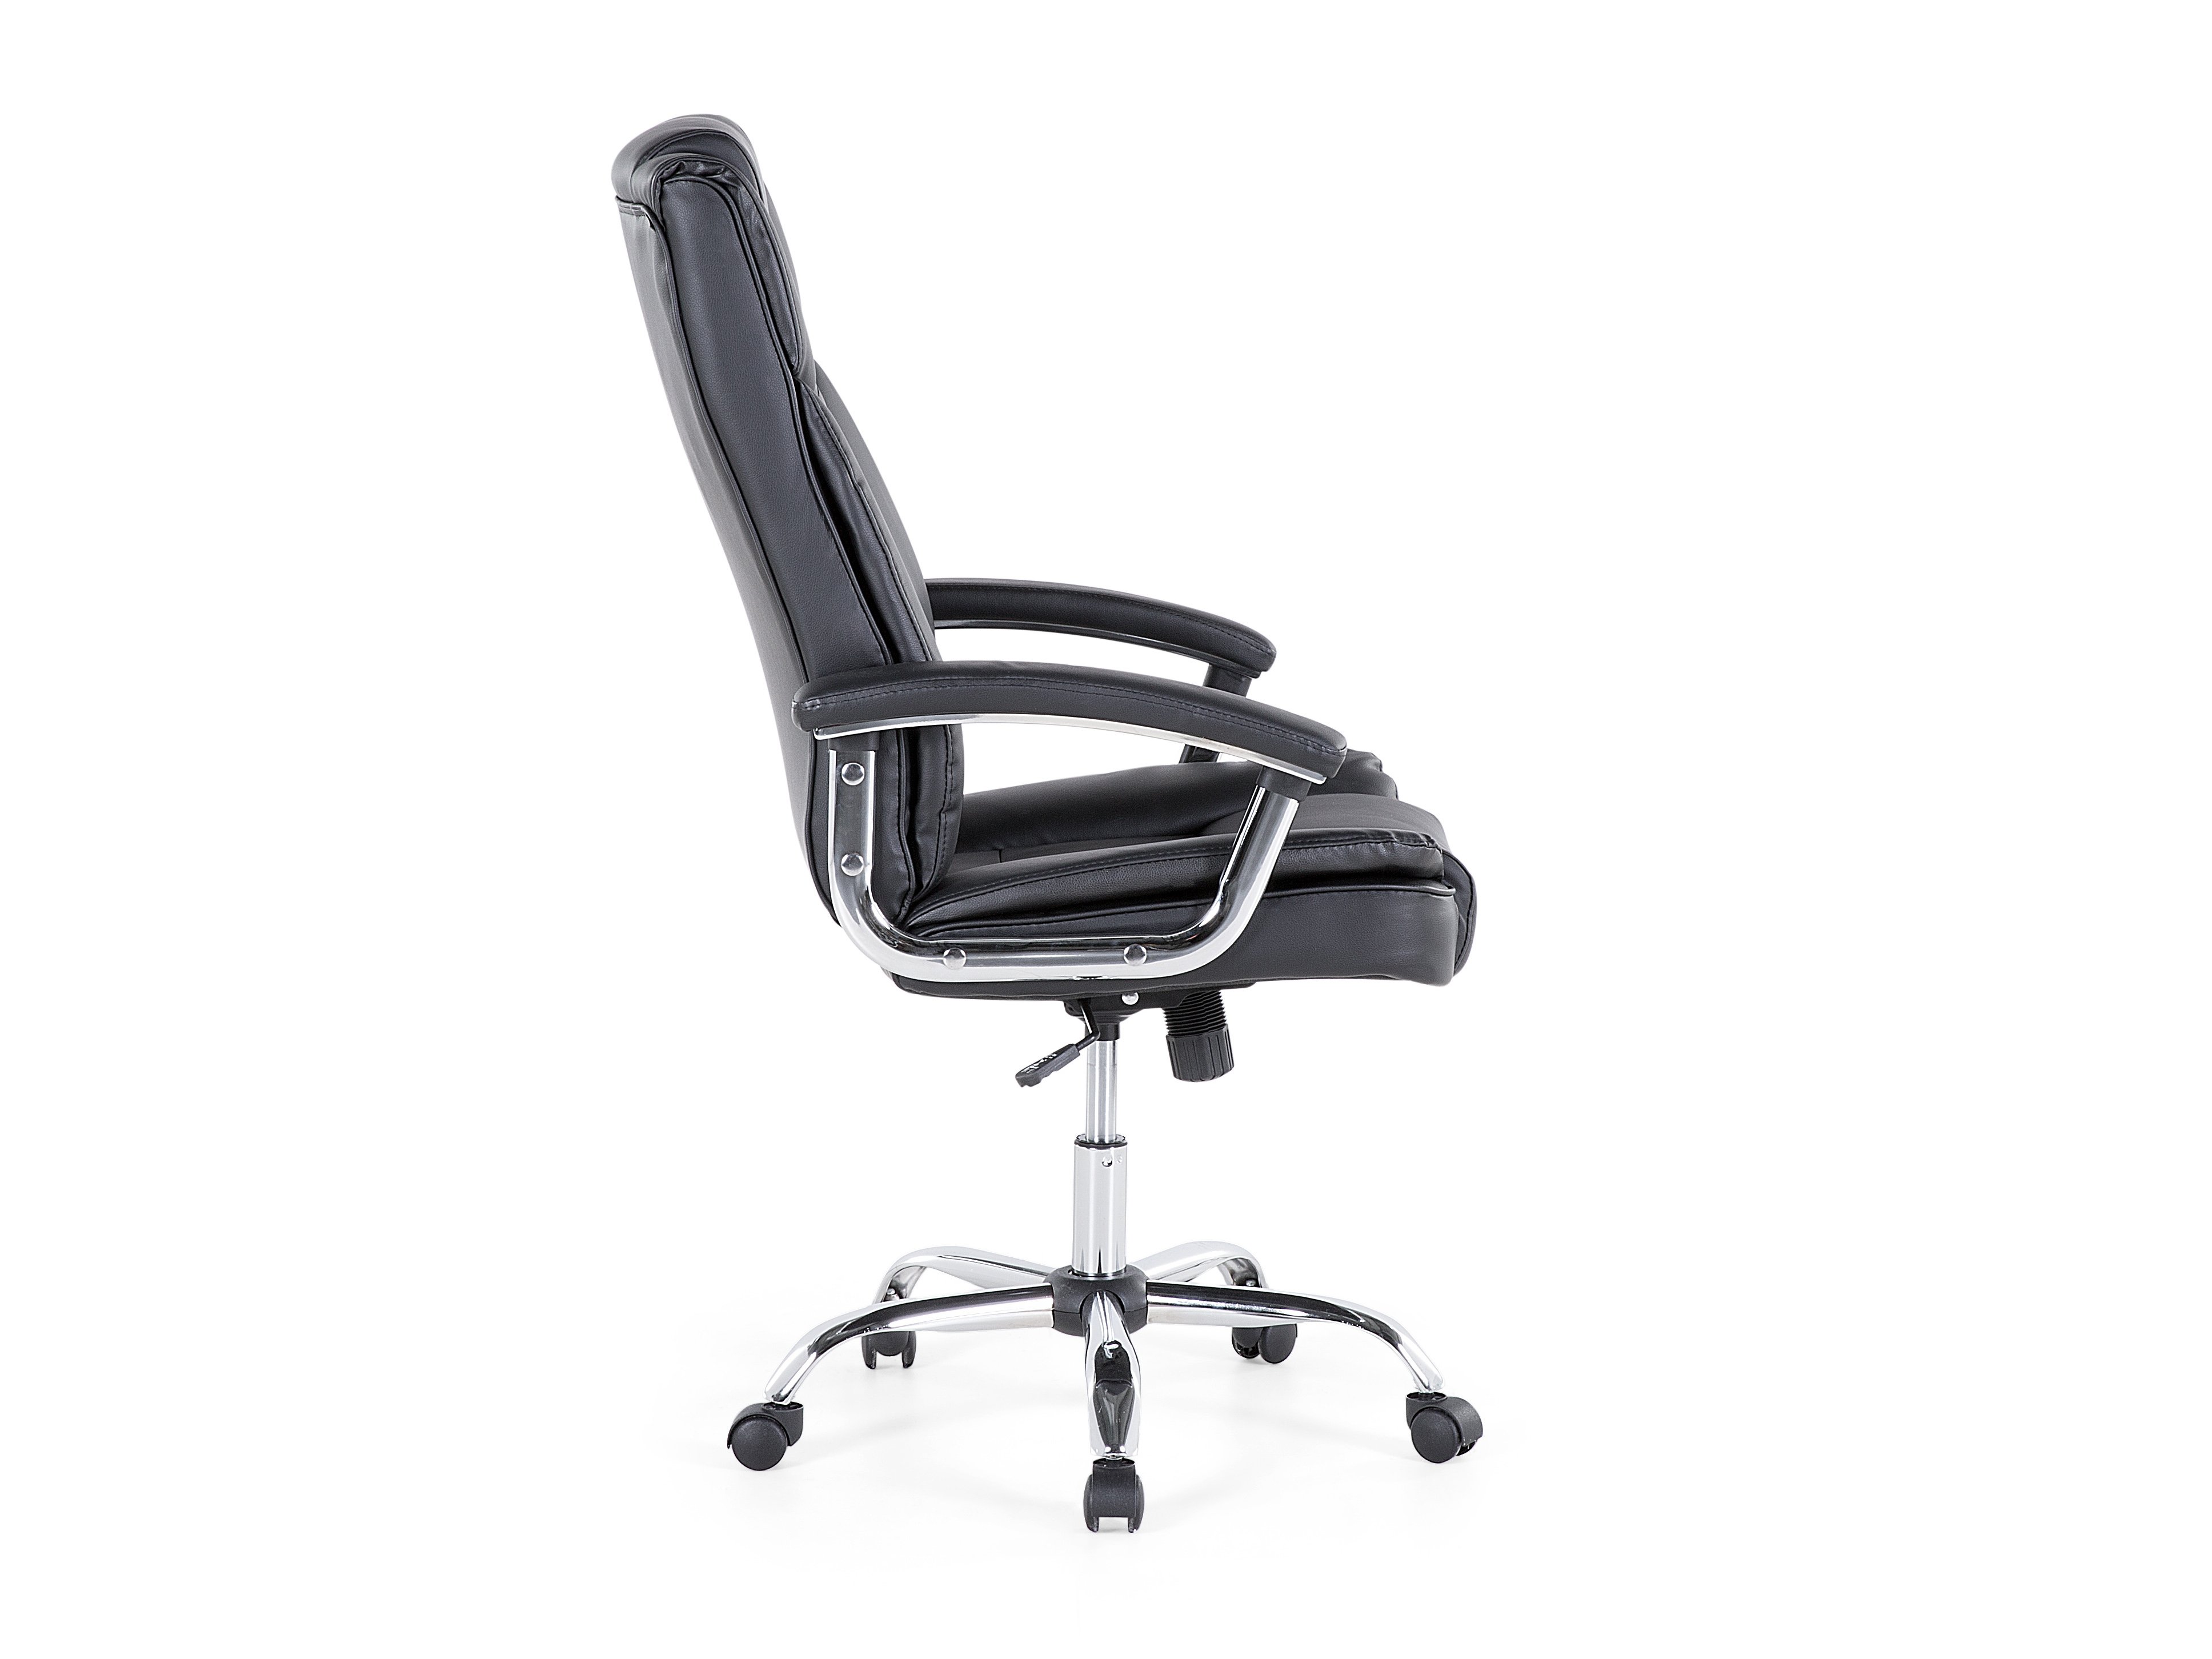 Kancelářská židle Aldan (černá)